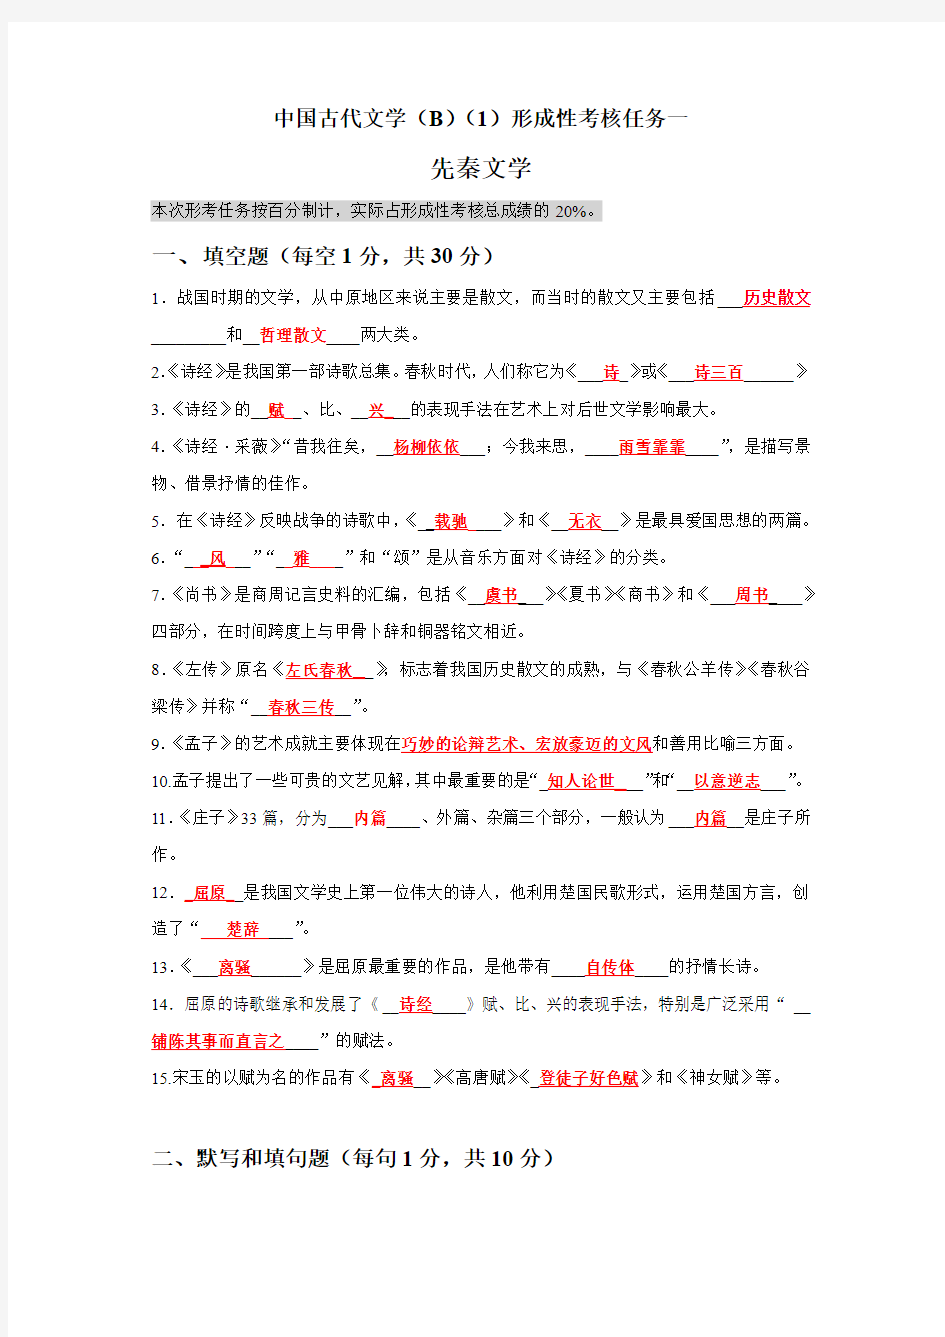 国开电大《中国古代文学(B)(1)》网上形考任务1-4参考答案